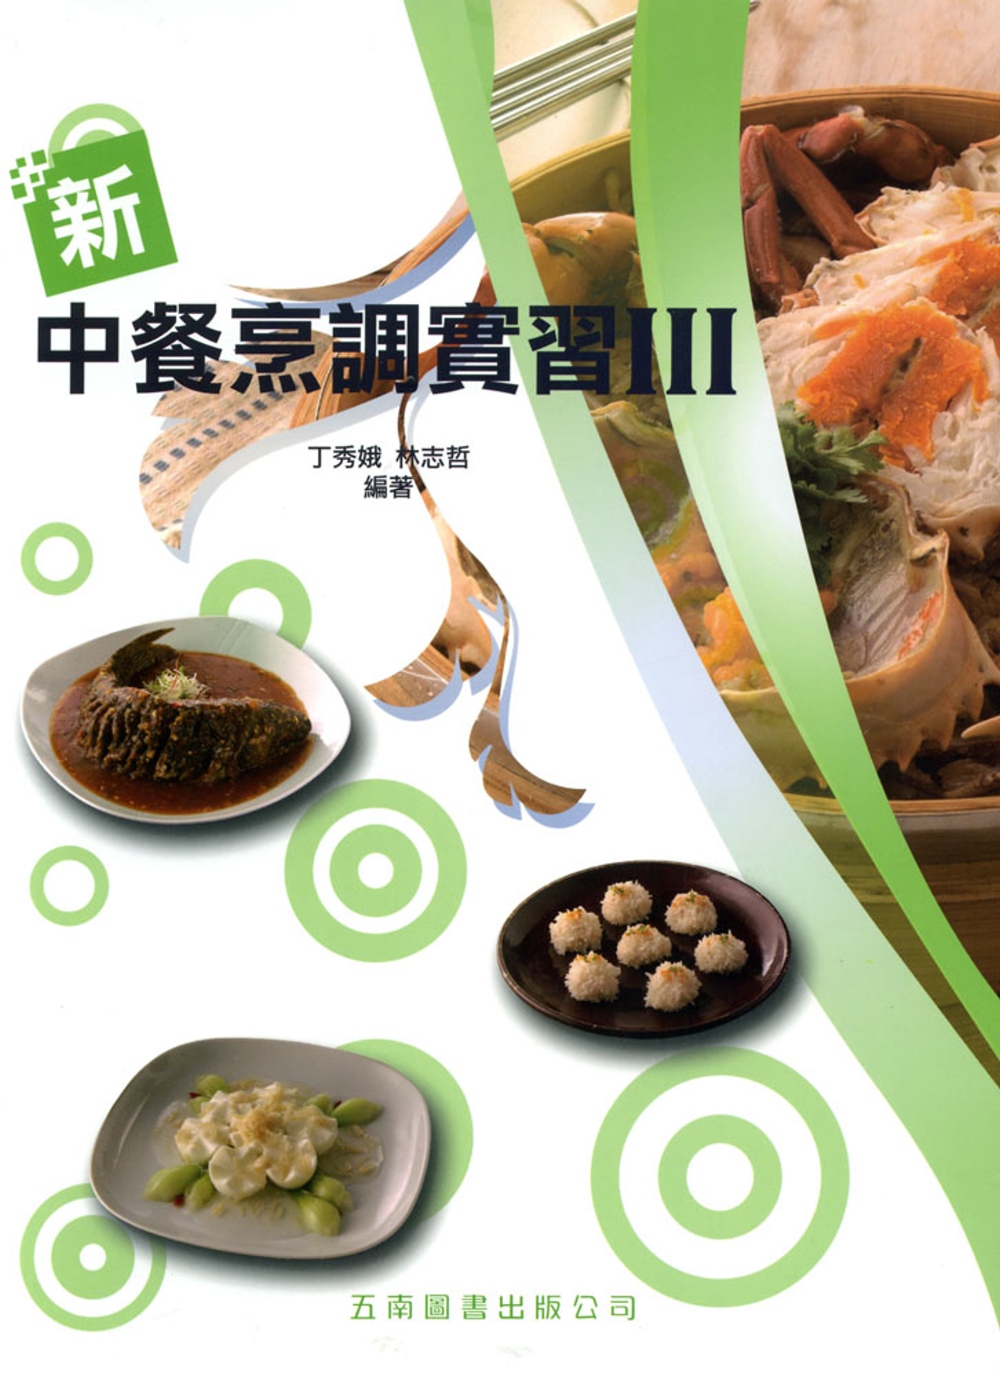 新中餐烹調實習III(附手冊、習作簿、評量卷)